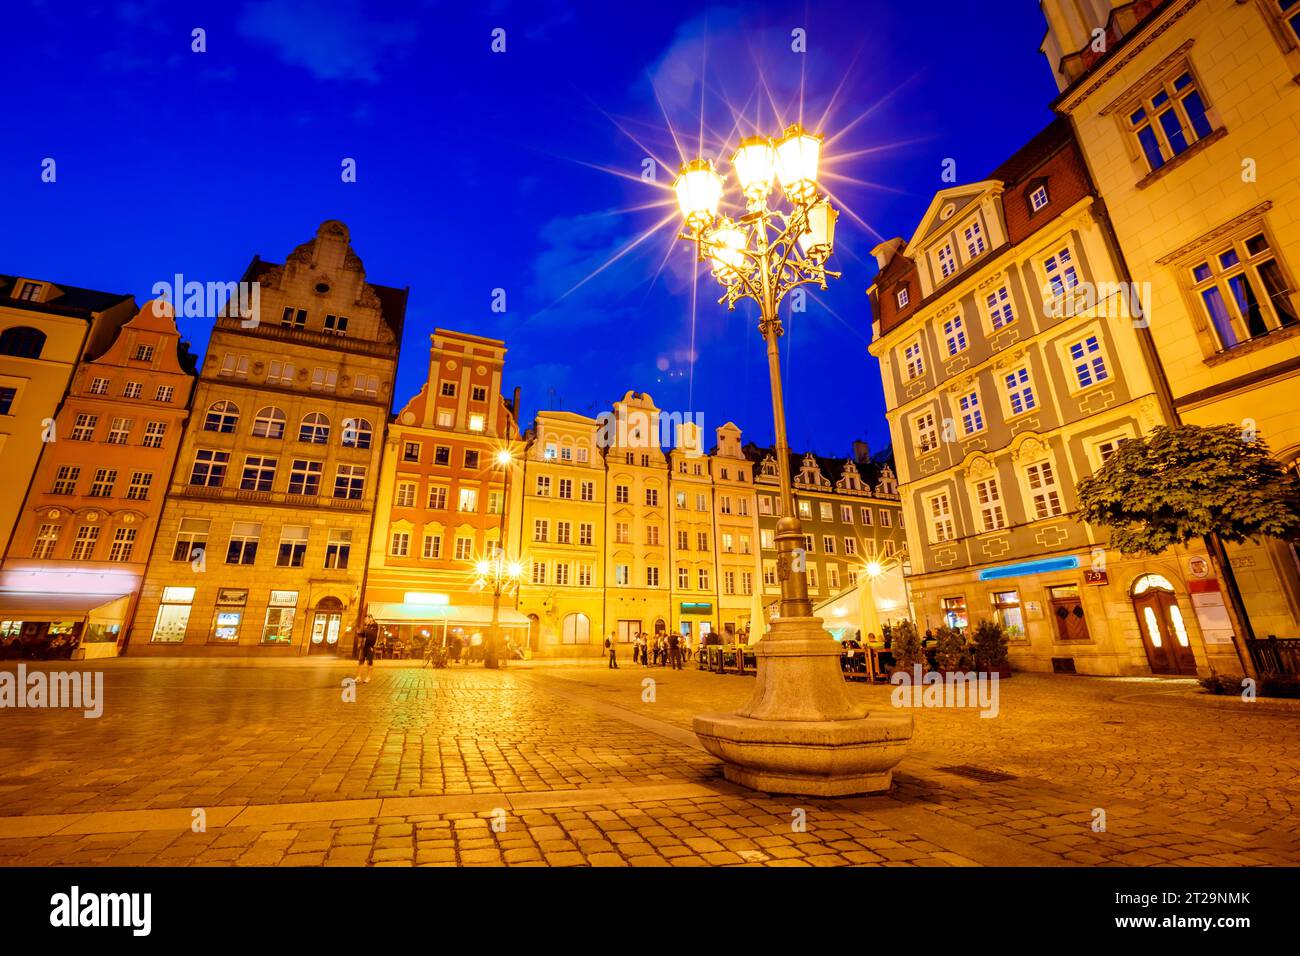 Impresionante imagen de la ciudad antigua. Ubicación Place Wroclaw Market Square, país de Polonia, famoso y centro cultural de Europa. Capital histórica de Sile Foto de stock